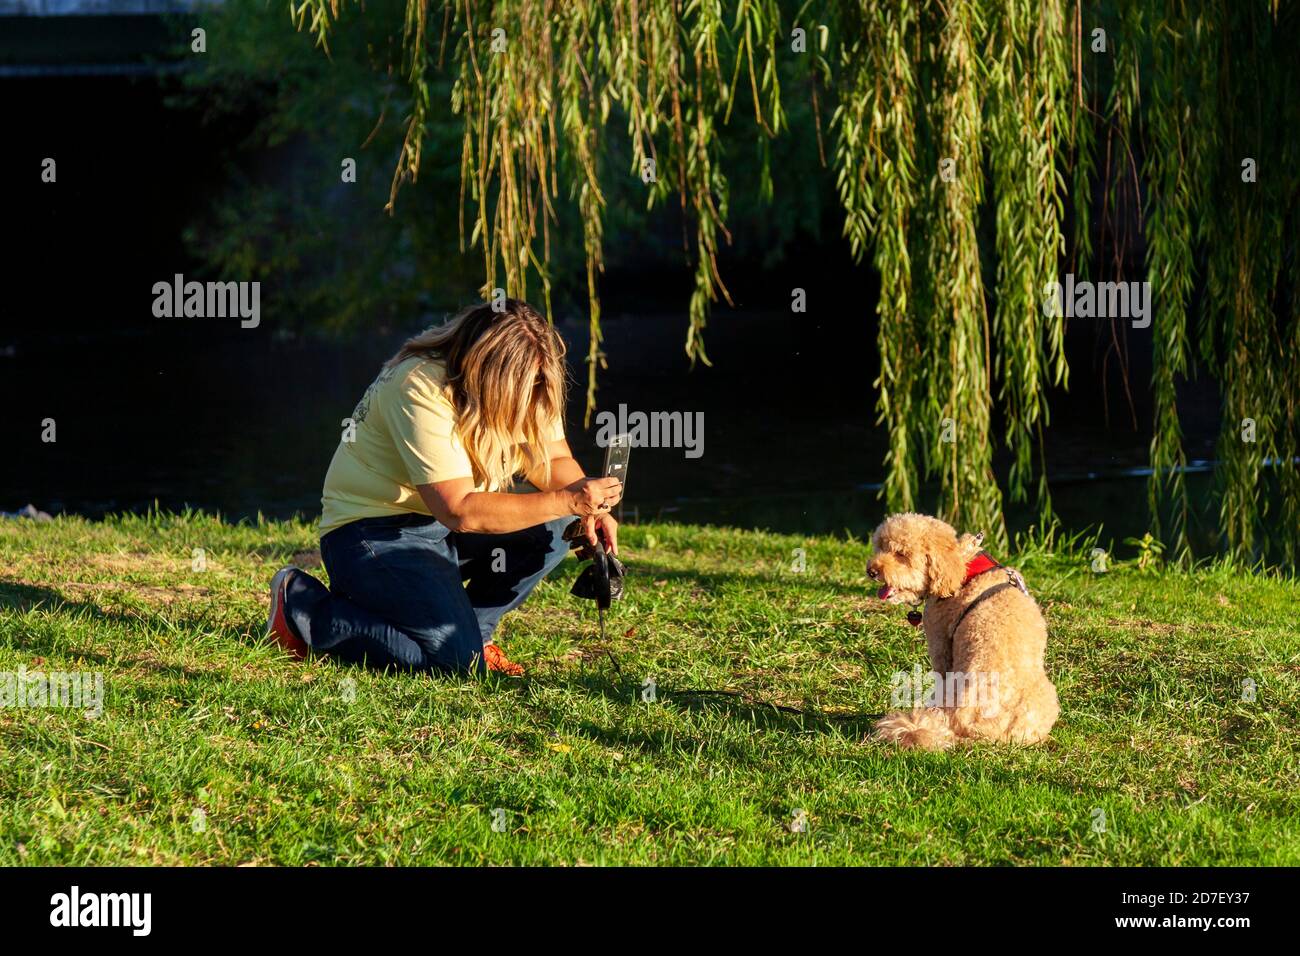 Eine blonde Frau kniet auf einer Wiese unter einem Fallenlassen Weidenbaum, um ein Porträt von ihm zu machen Brauner Terrier Hund mit ihrem Handy.Hund sitzt und Stockfoto